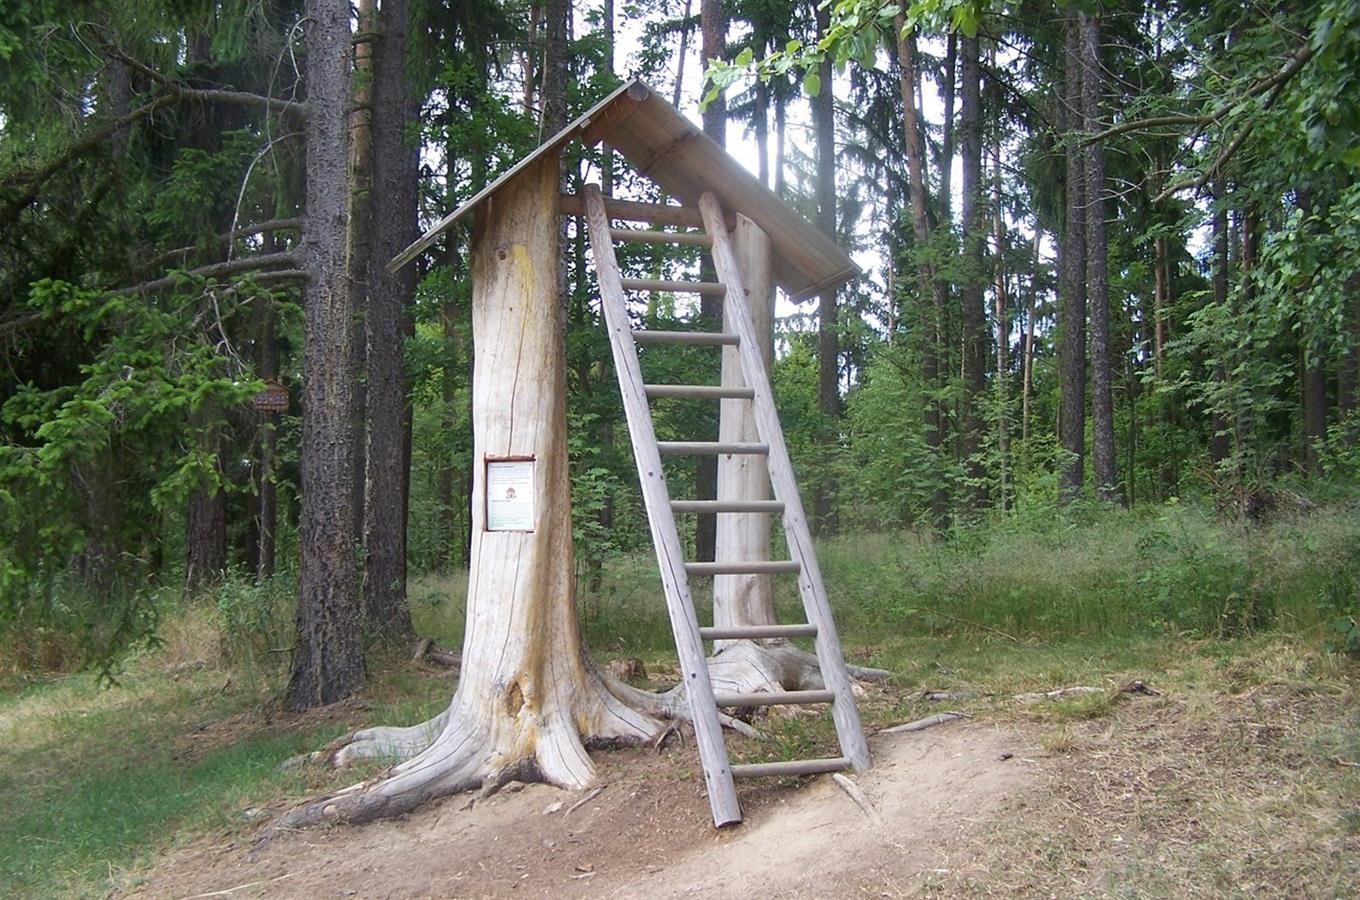 Cesta pohádkovým lesem u Slavonic - turistická trasa pro děti